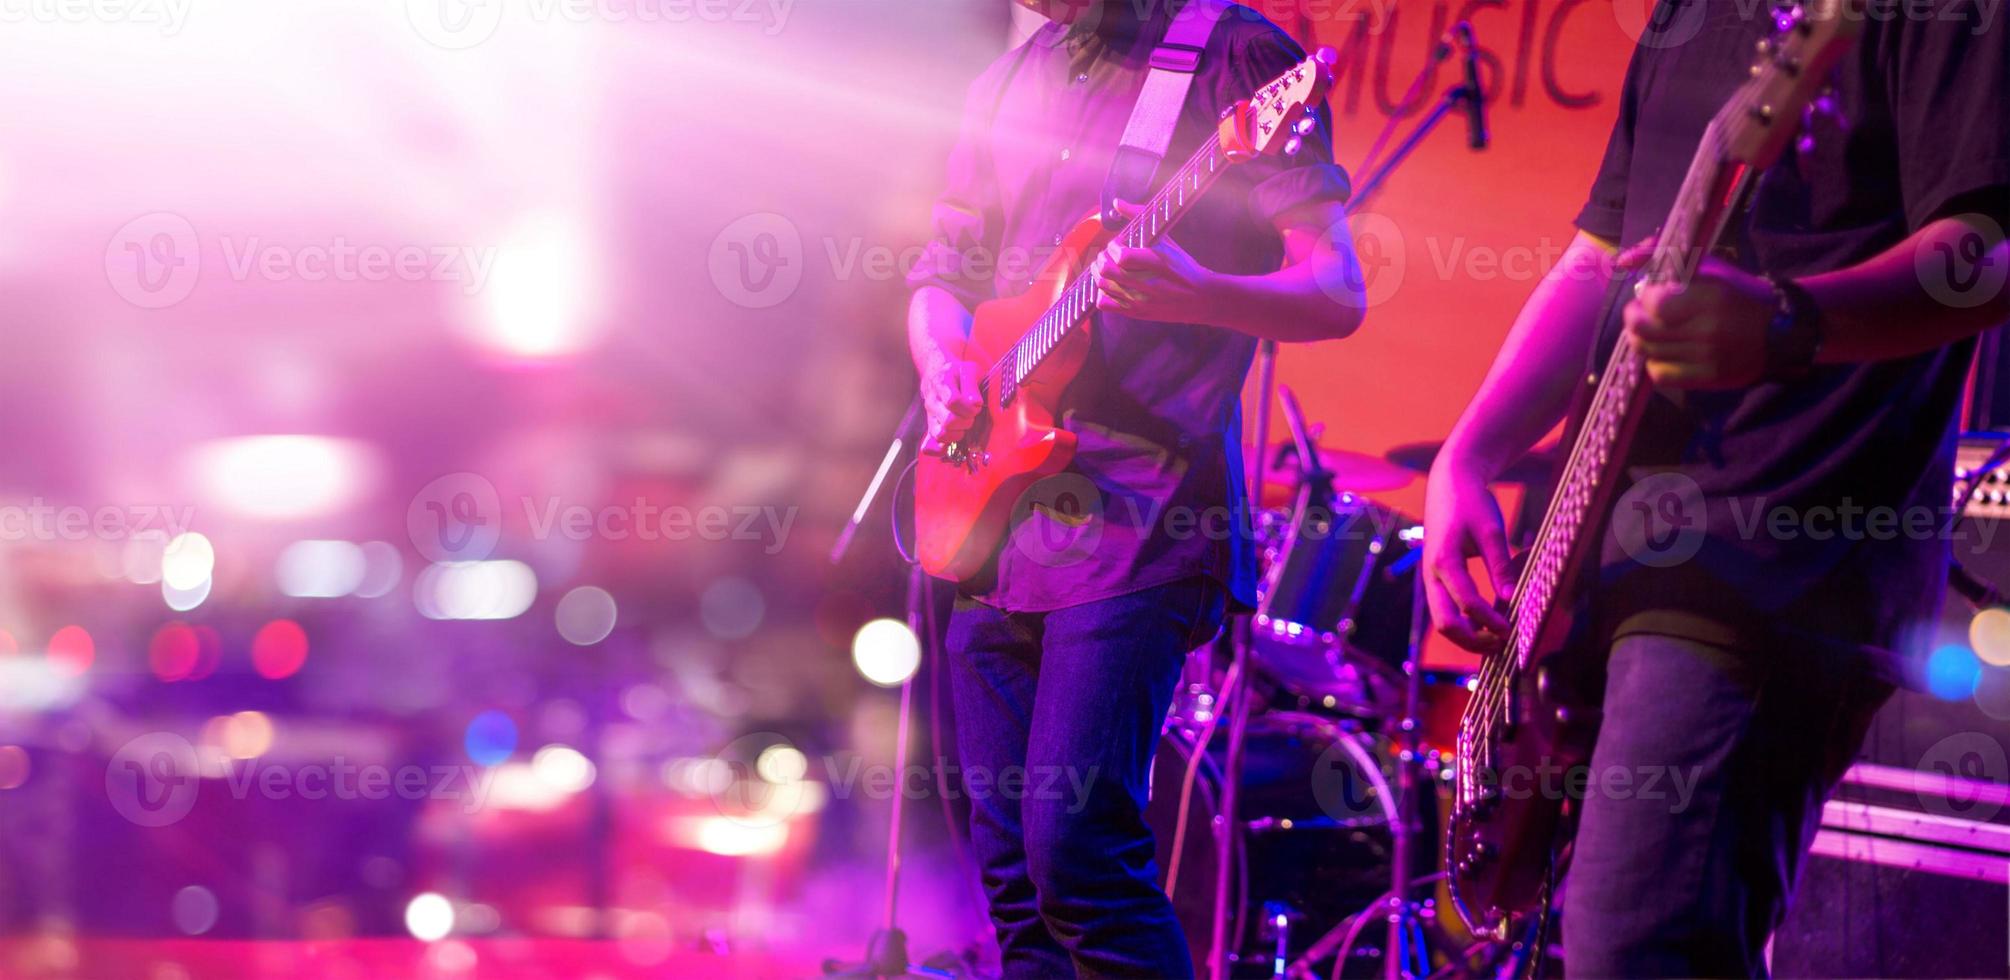 guitarrista e iluminação colorida em um palco, foco suave foto